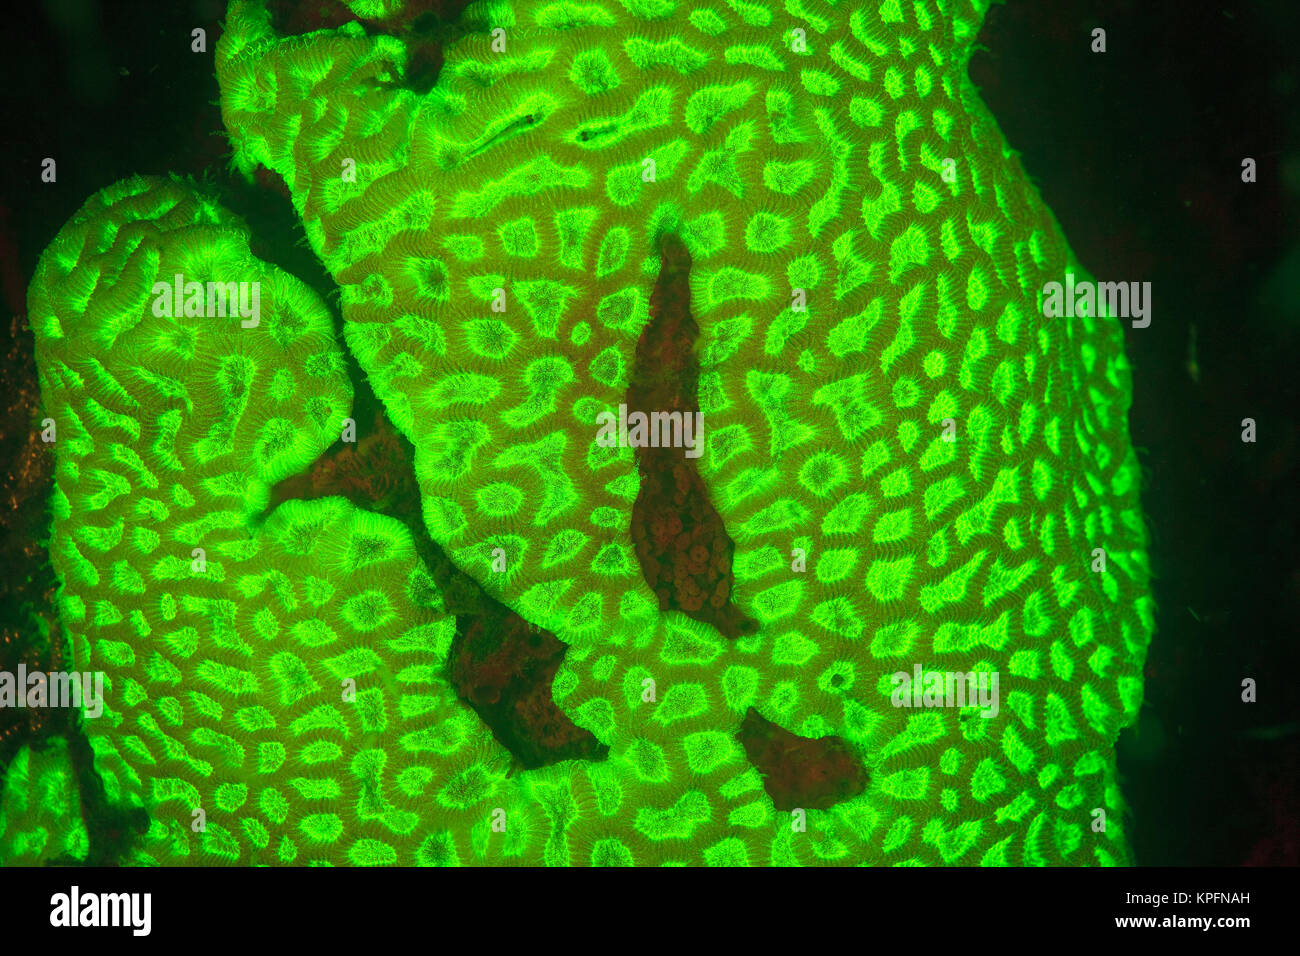 Naturale di fluorescenza che si verificano in underwater coralli duri (Favia sp.), acquisite mediante offerte di bloccaggio di UV filtri di barriera, immersione notturna vicino villaggio Lewolin, Illi Isola Api, Selat Boleng stretto, Indonesia Foto Stock